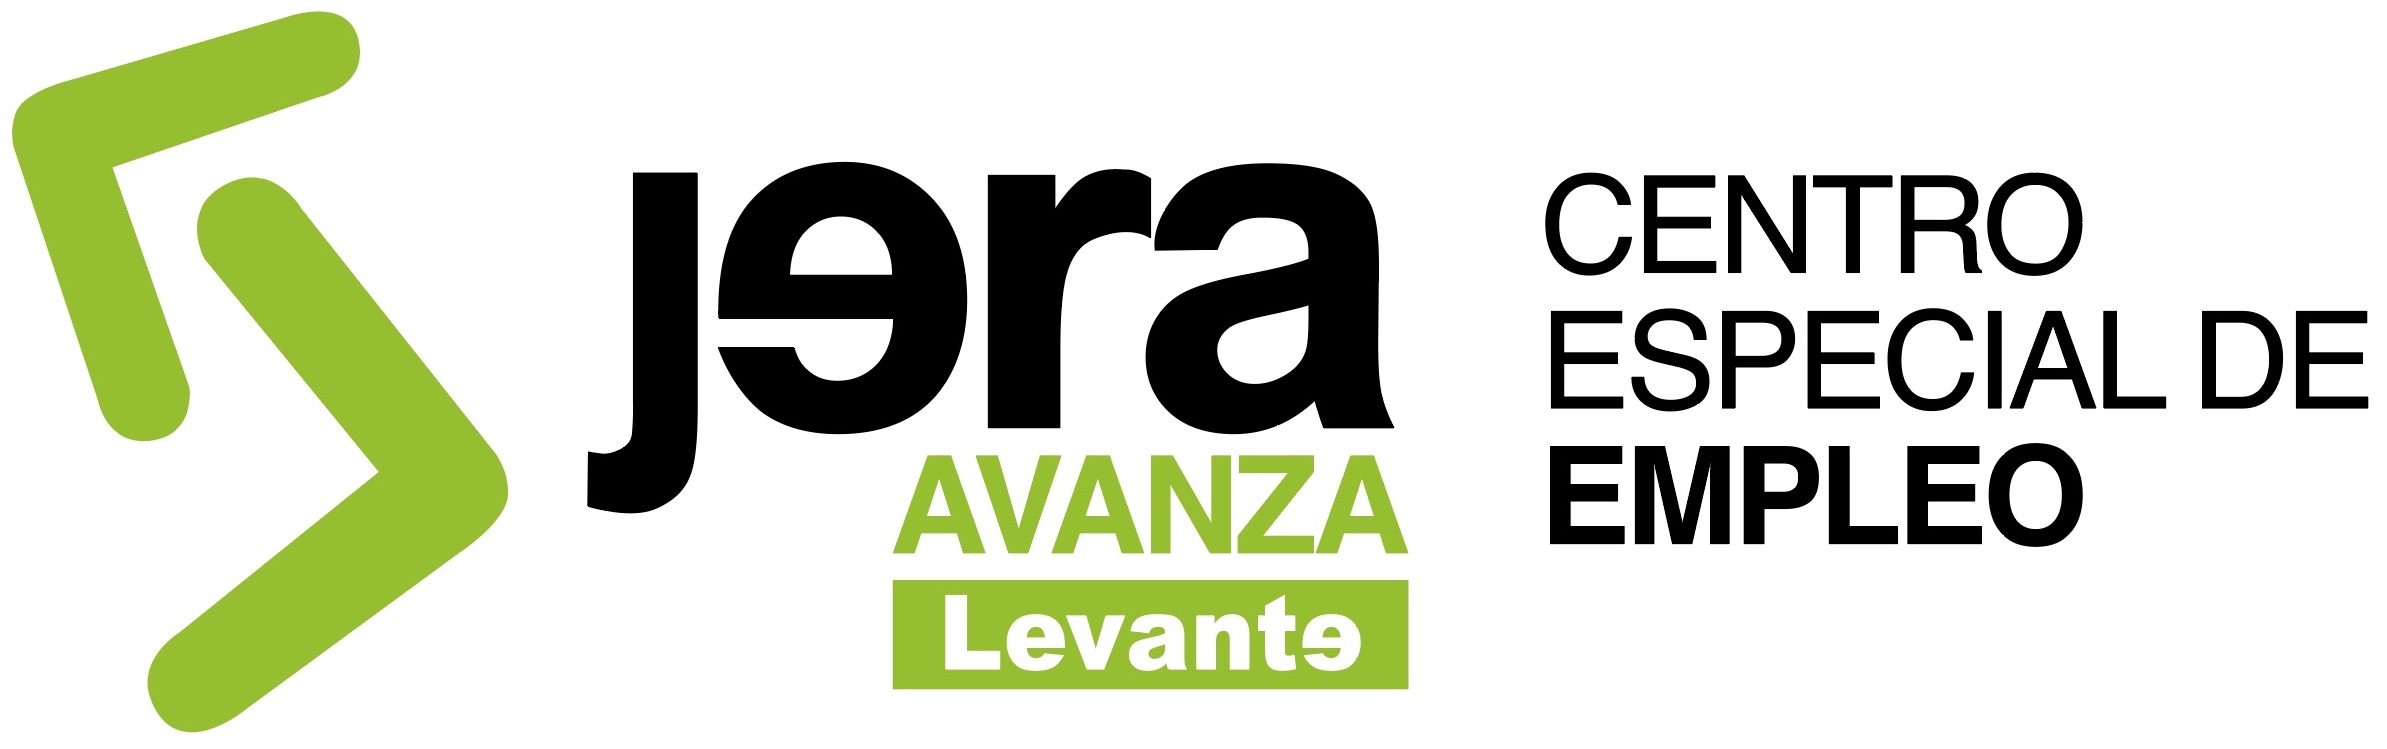 Jera Avanza Levante :: Centro Especial de Empleo